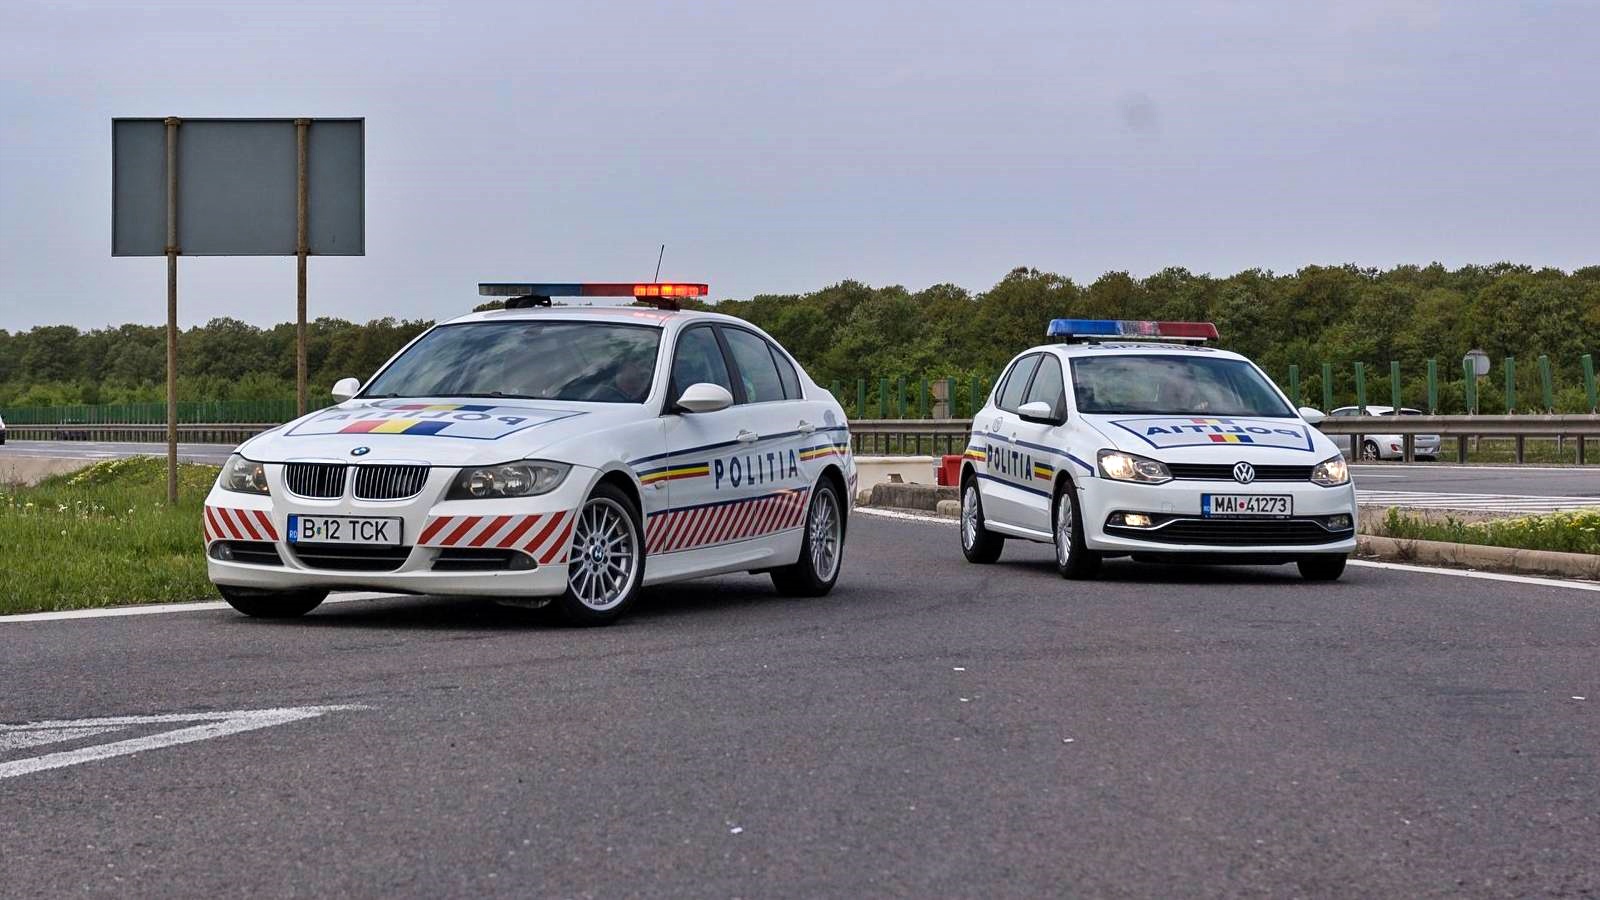 Nouvel avertissement de la police roumaine sur la circulation routière